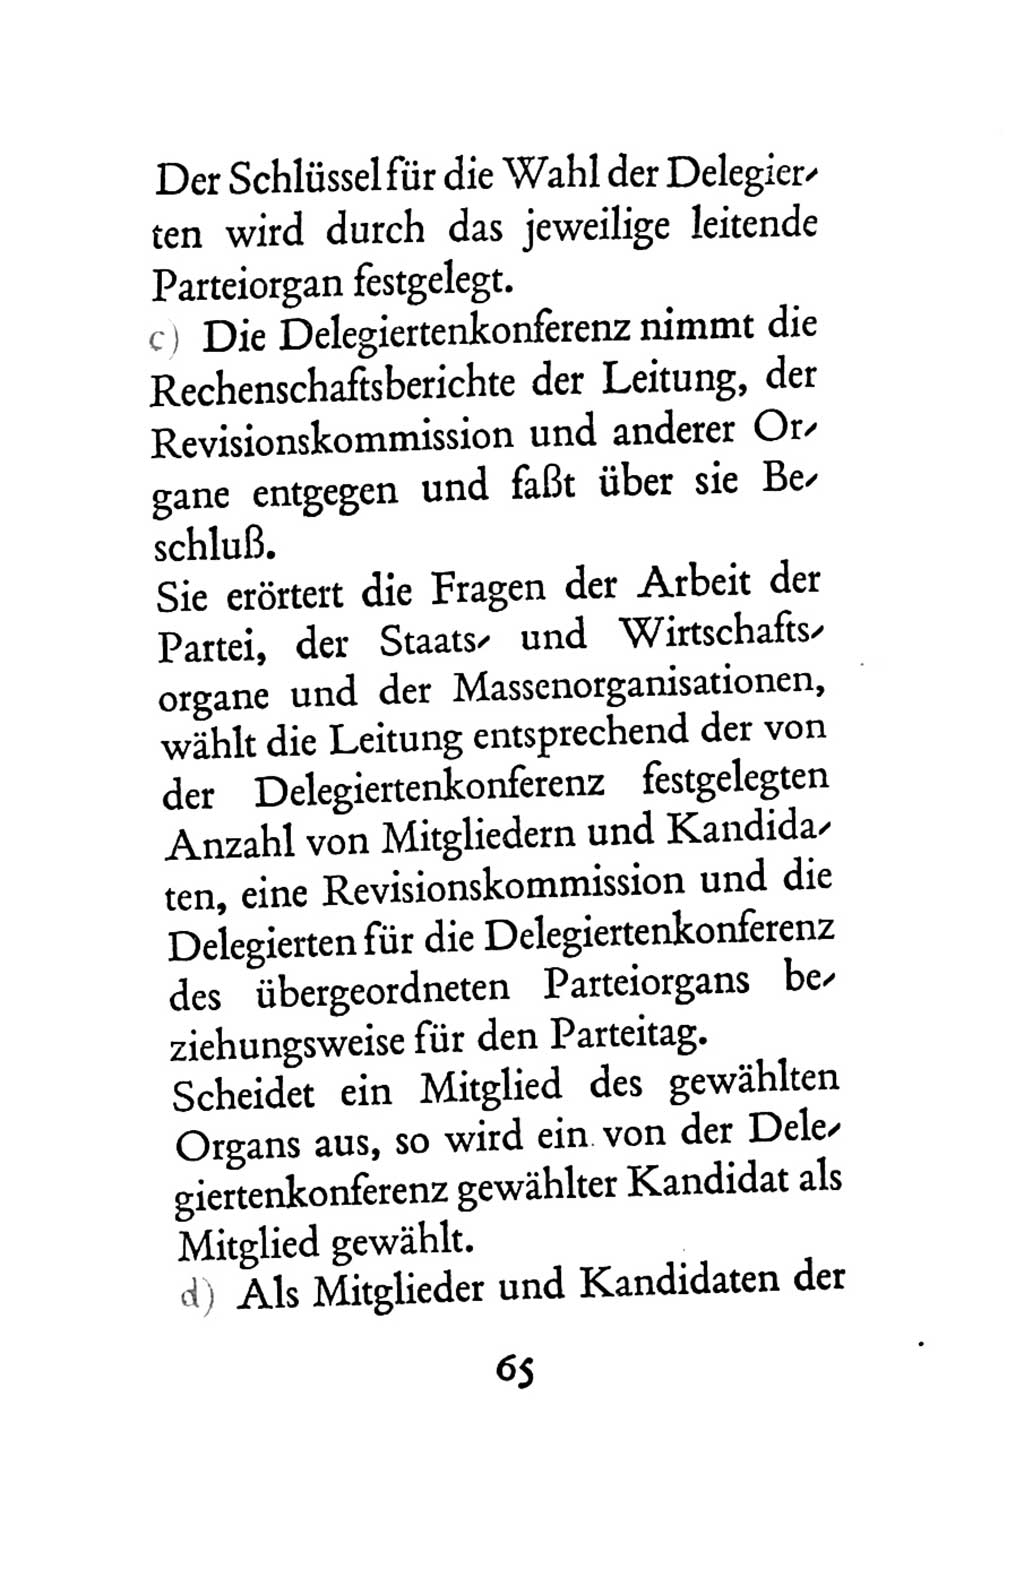 Statut der Sozialistischen Einheitspartei Deutschlands (SED) 1963, Seite 65 (St. SED DDR 1963, S. 65)